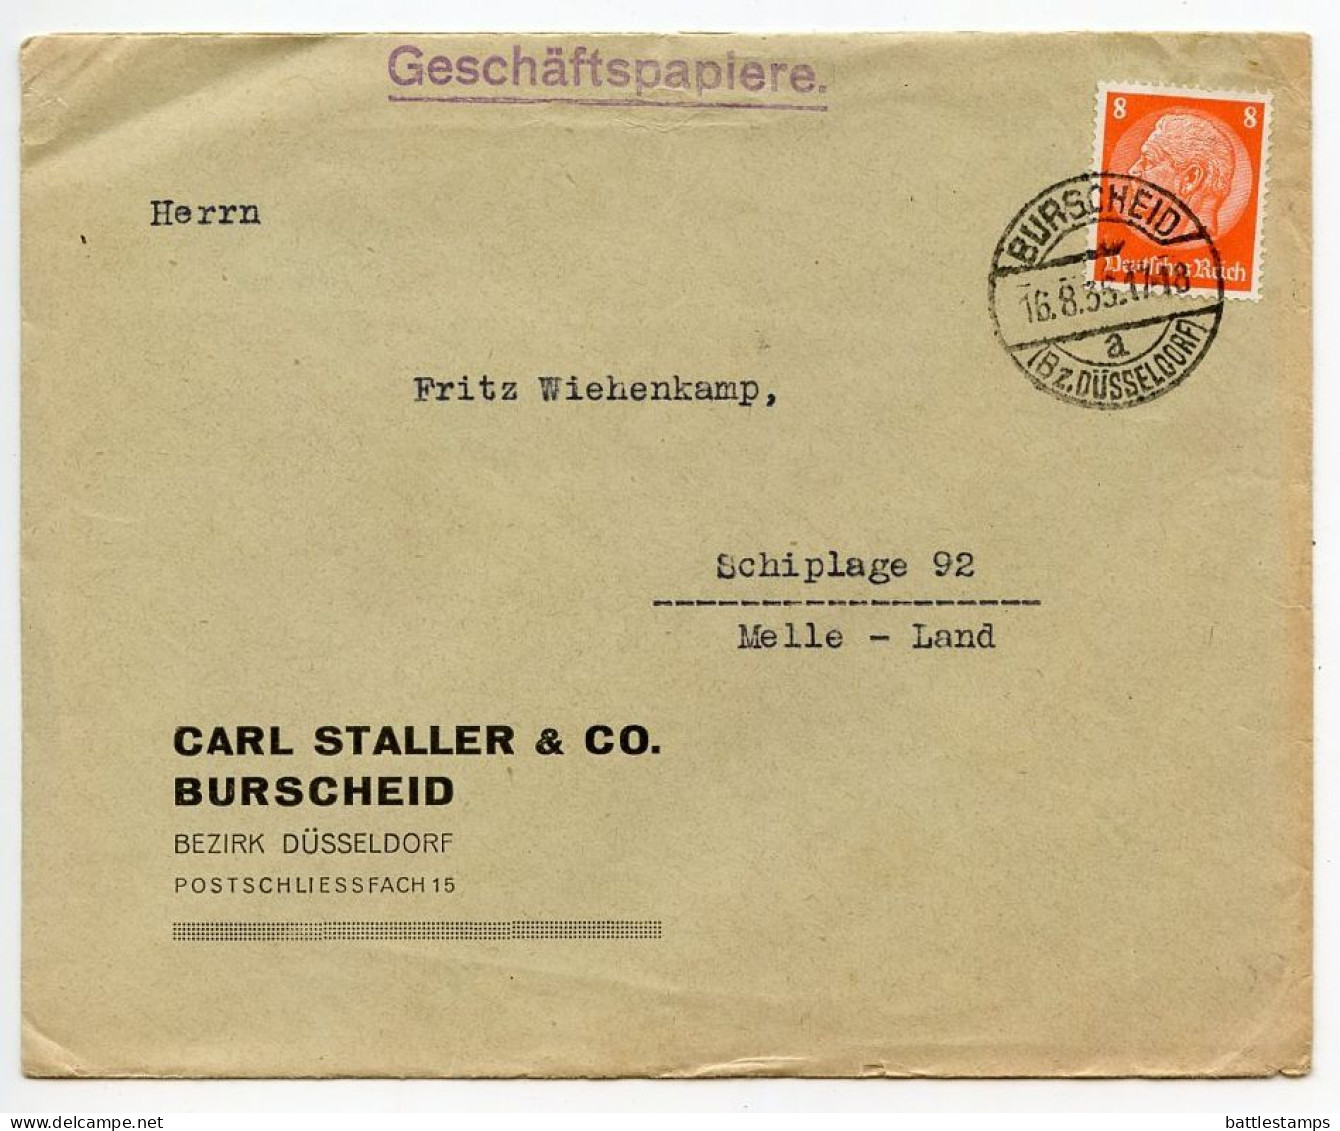 Germany 1935 Cover; Burscheid (Bz. Düsseldorf) - Carl Staller & Co. To Schiplage; 8pf. Hindenburg - Lettres & Documents